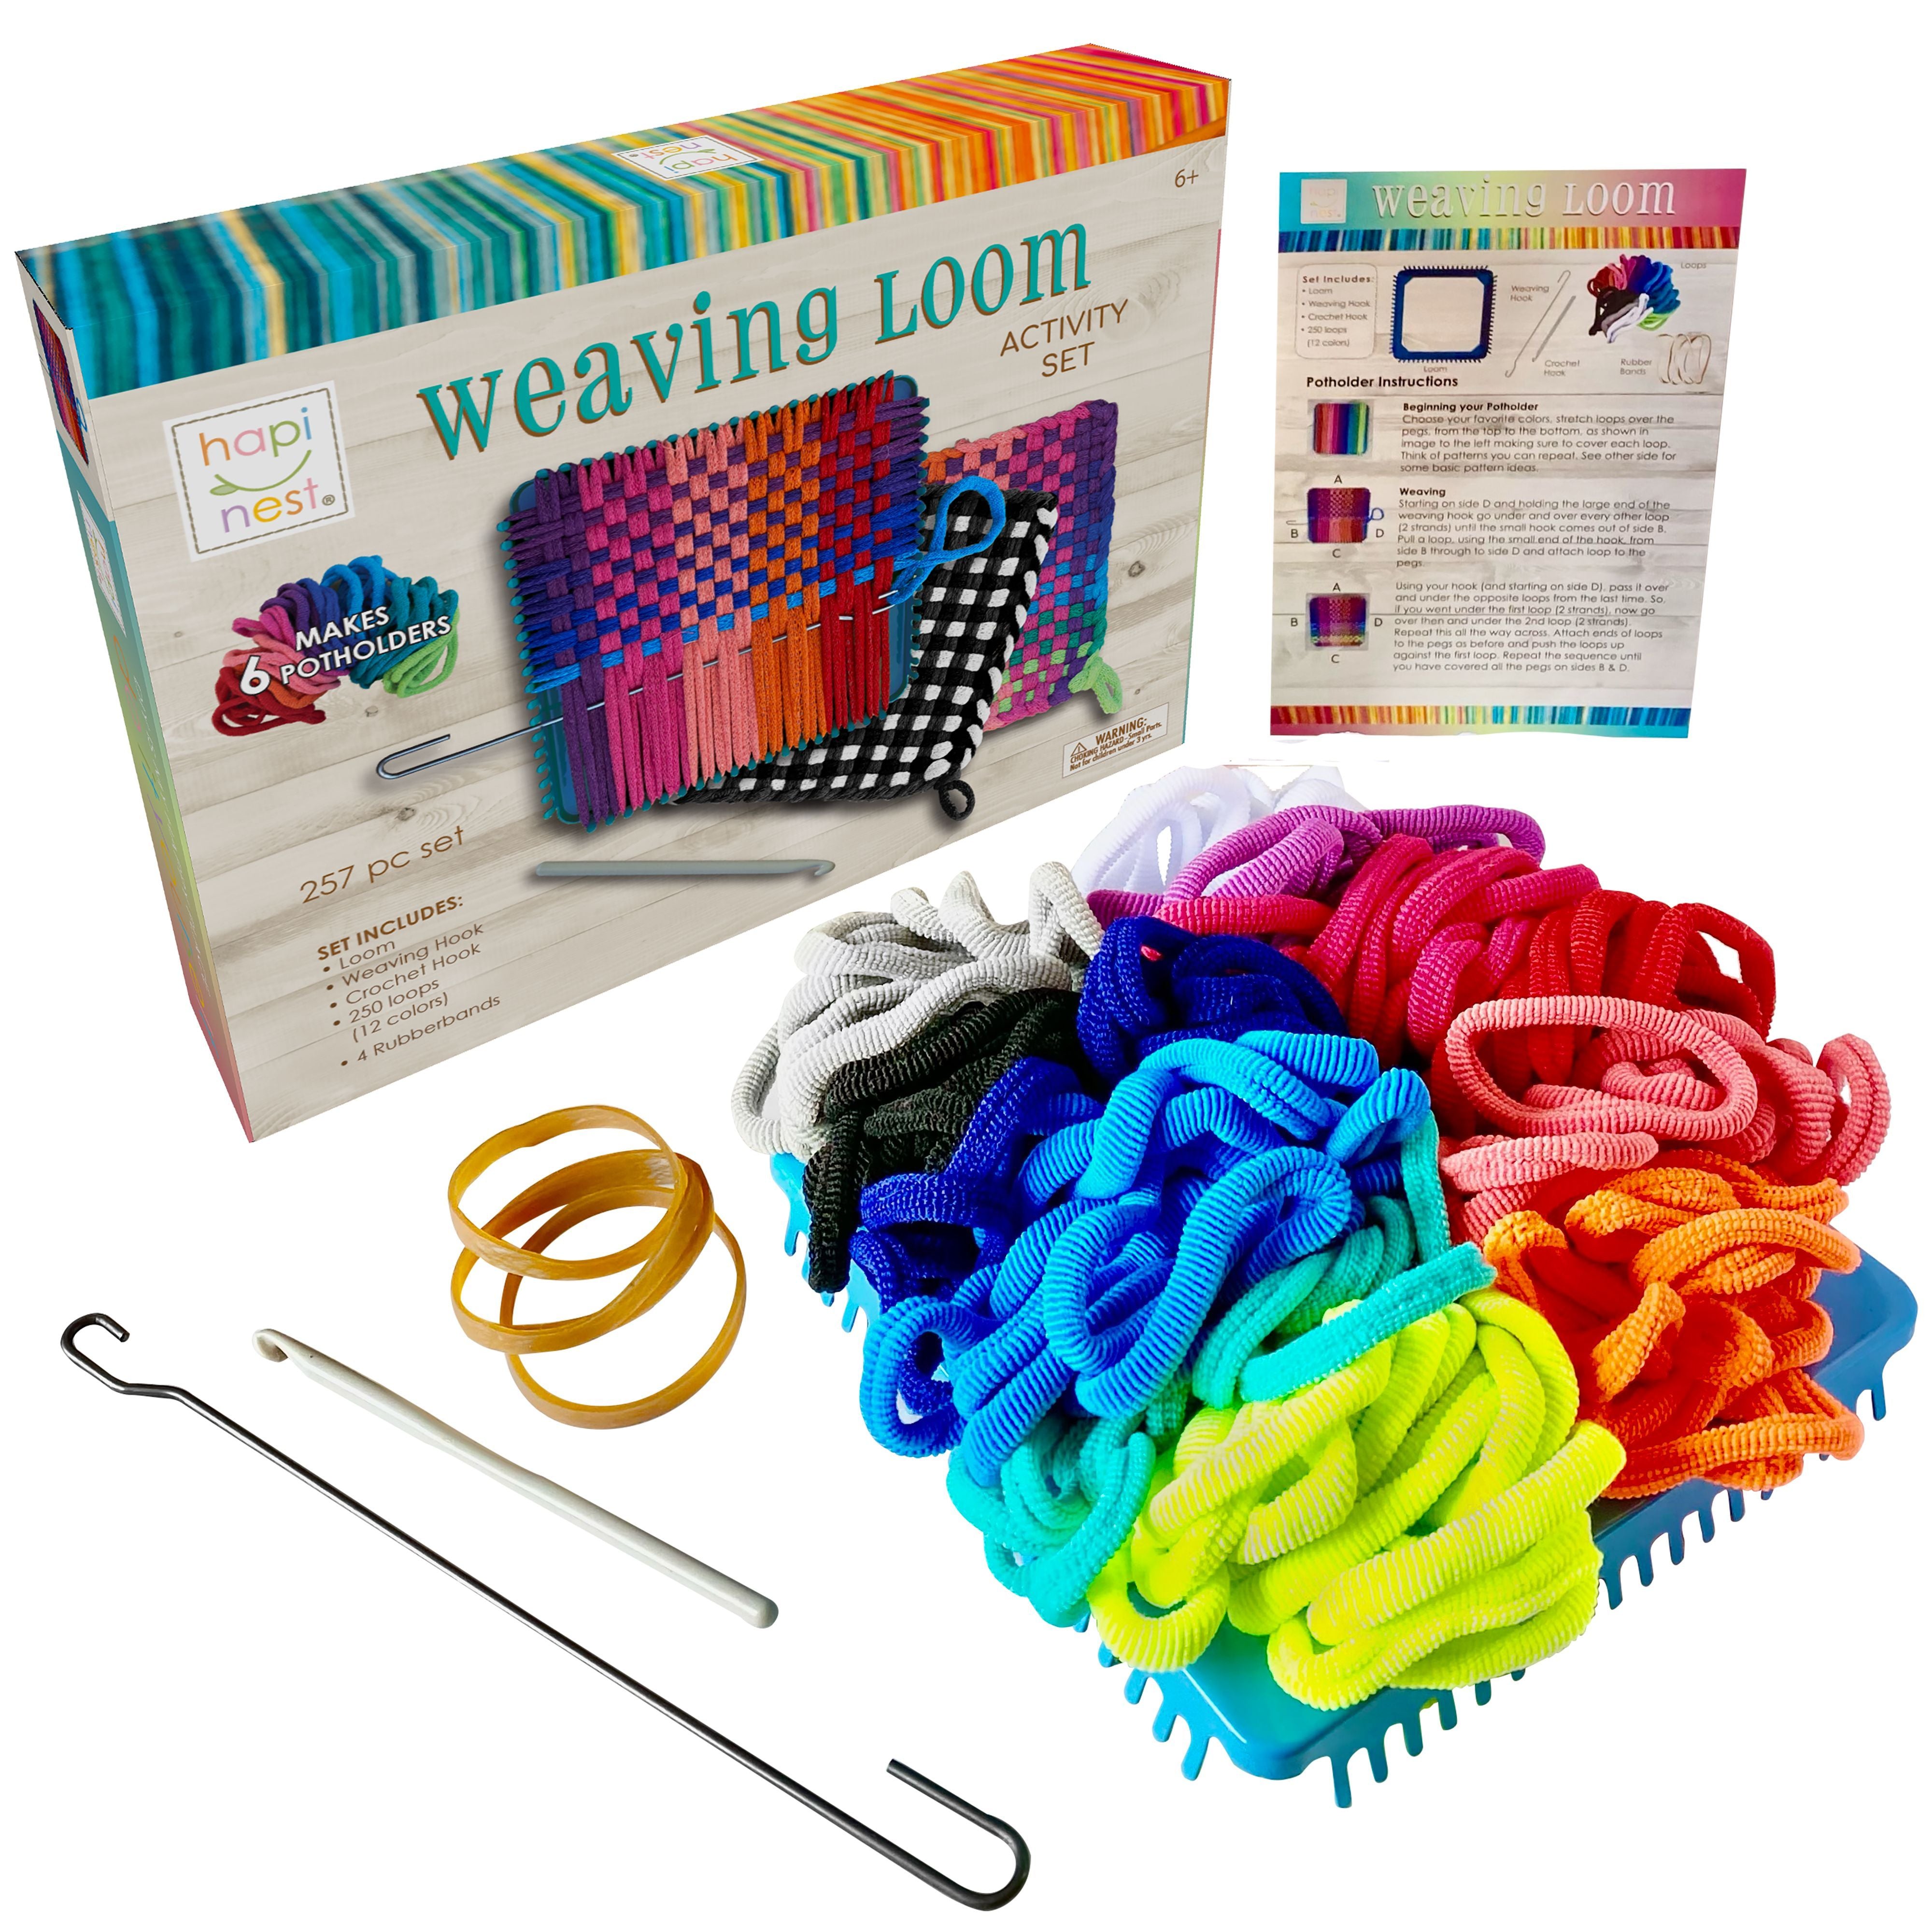 Make Your Own Potholders Weaving Loom Kit